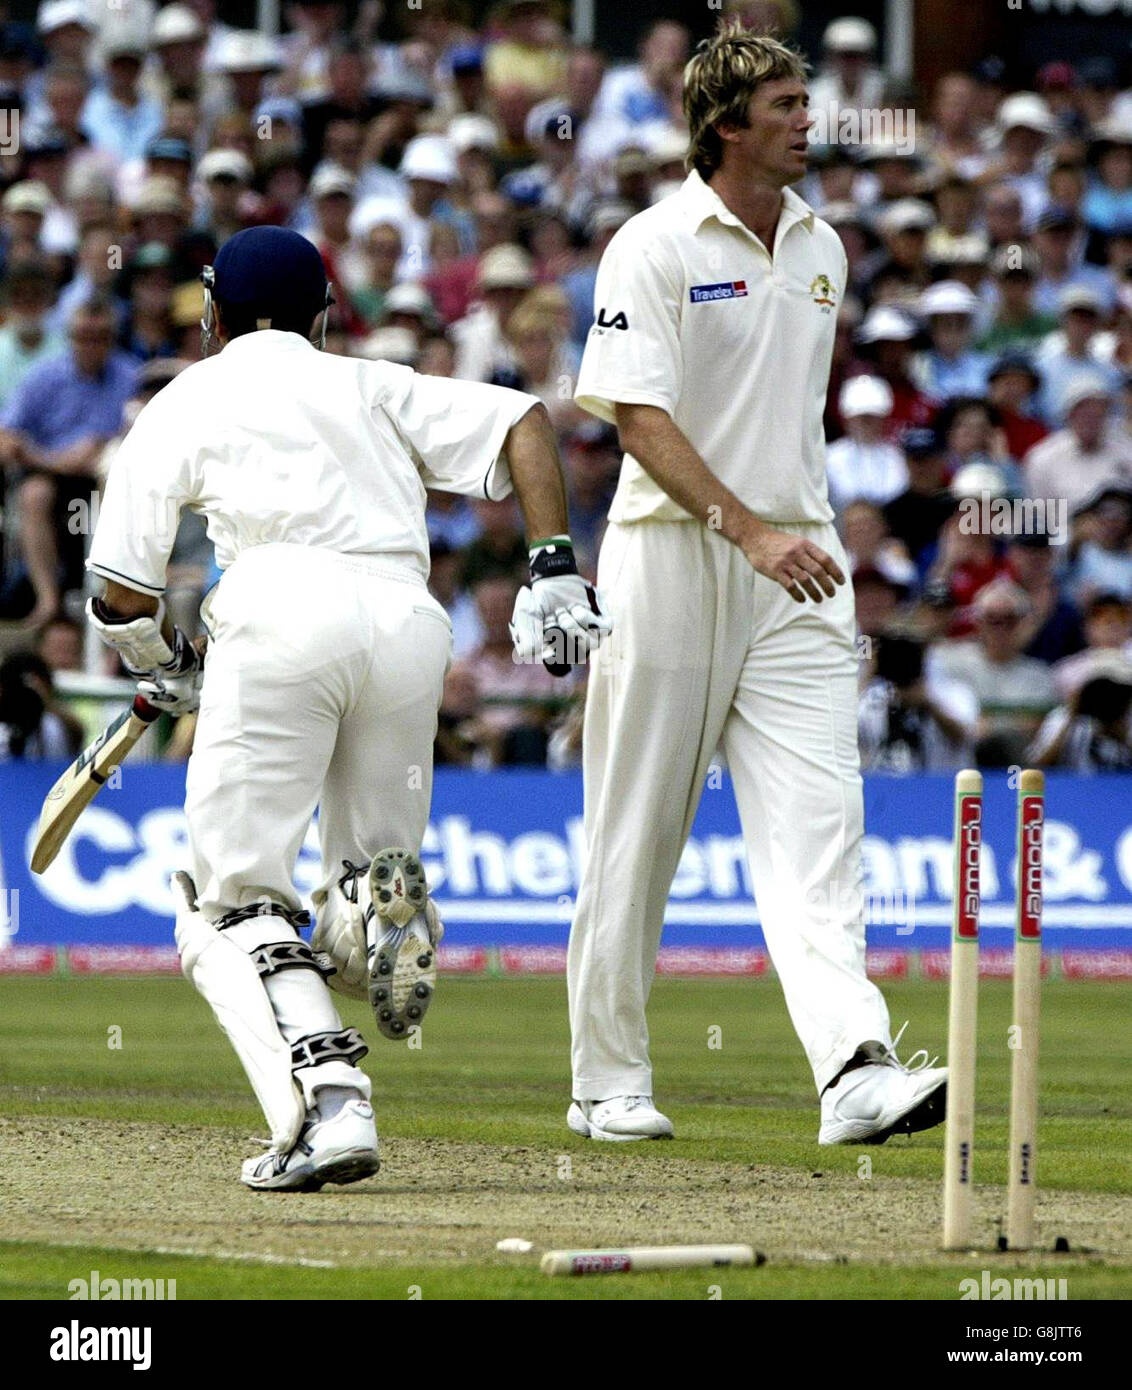 Cricket - The Ashes - npower Third Test - England gegen Australien - Old Trafford. Der englische Schlagmann Michael Vaughan läuft eine Single, nachdem er von einem „No Ball“, der vom australischen Glenn McGrath geliefert wurde, sauber gewurzt wurde (rechts). Stockfoto